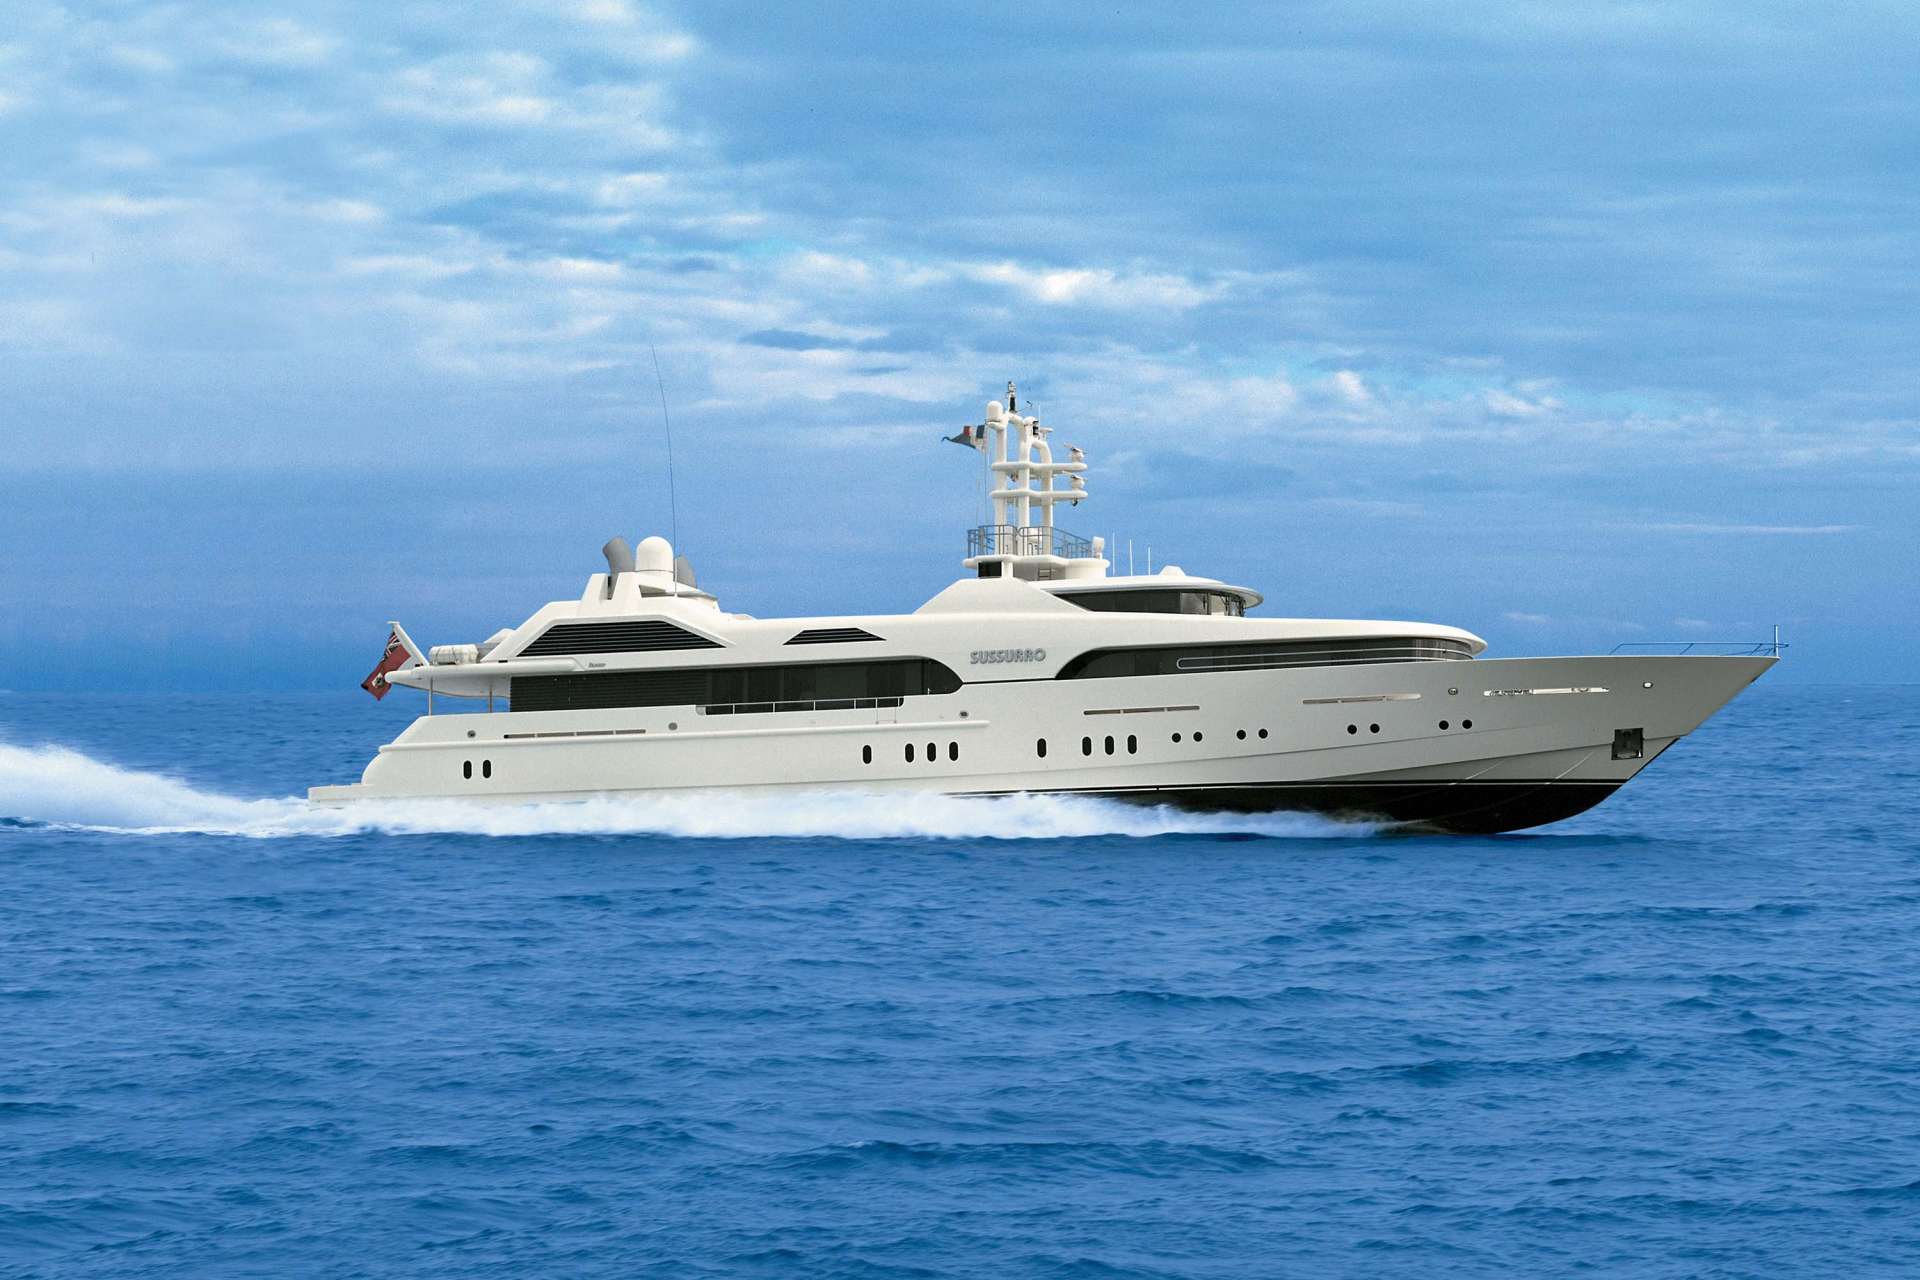 SUSSURRO Yacht • Feadship • 1998 • Owner Irina Malandina